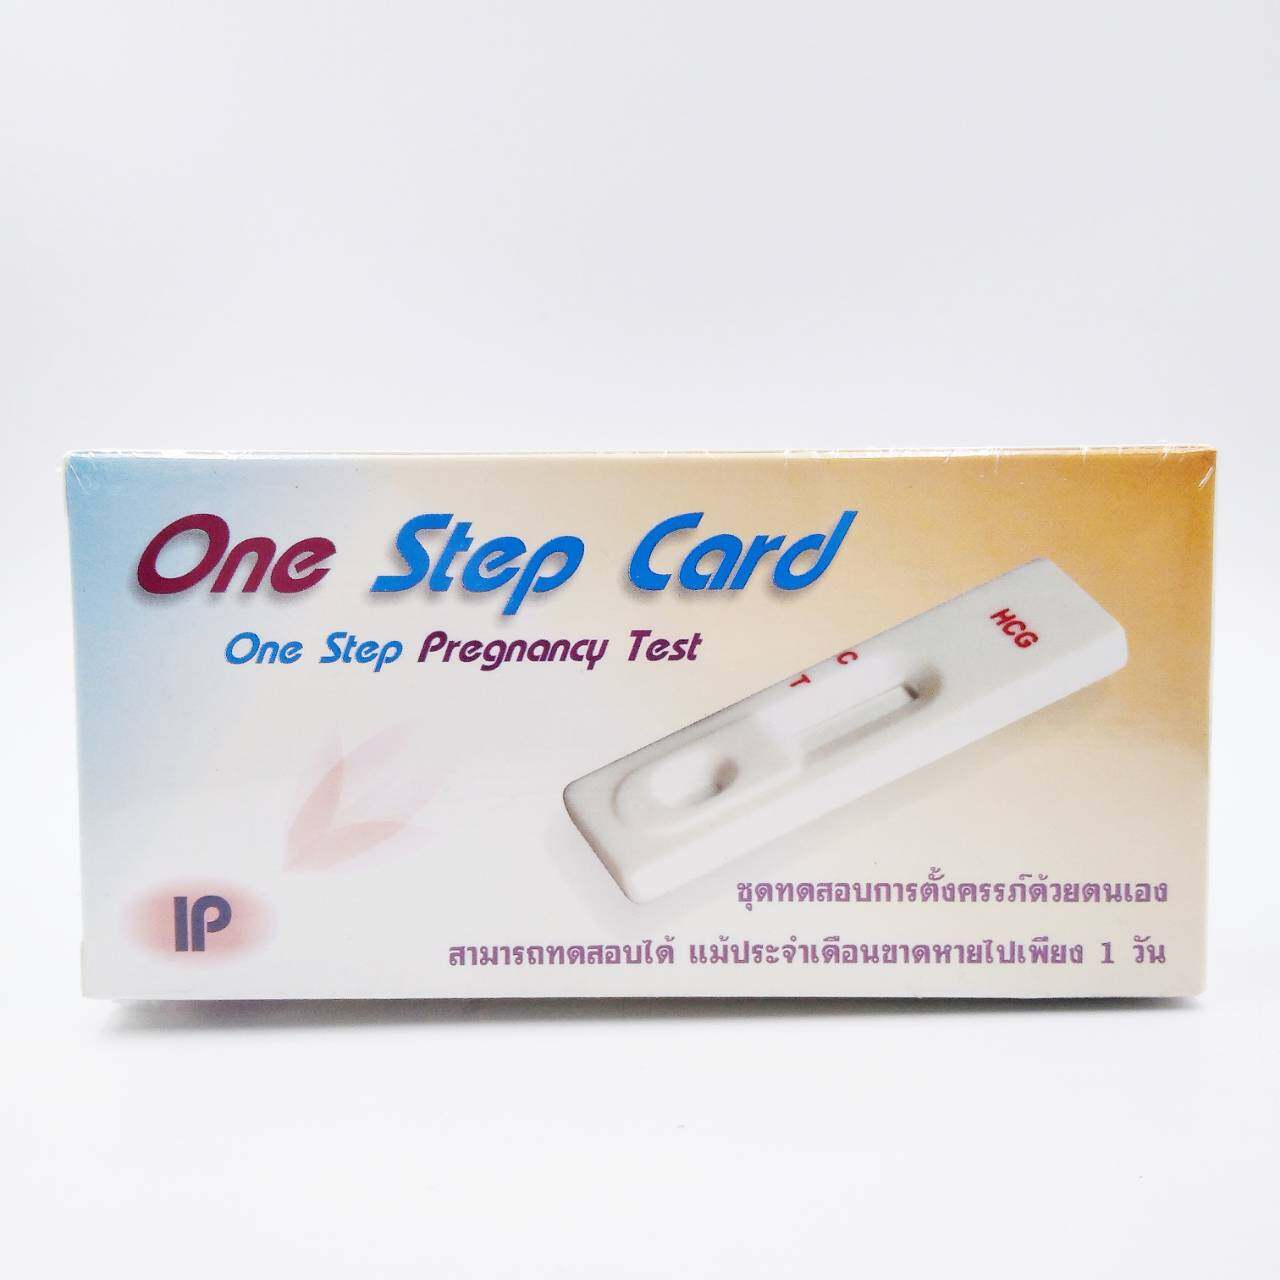 ที่ตรวจครรภ์ ชุดตรวจครรภ์ pregnancy test  IP One Step Card One Step  ชุดทดสอบการตั้งครรภ์ด้วยตนเองแบบหยด 1 เซต/กล่อง